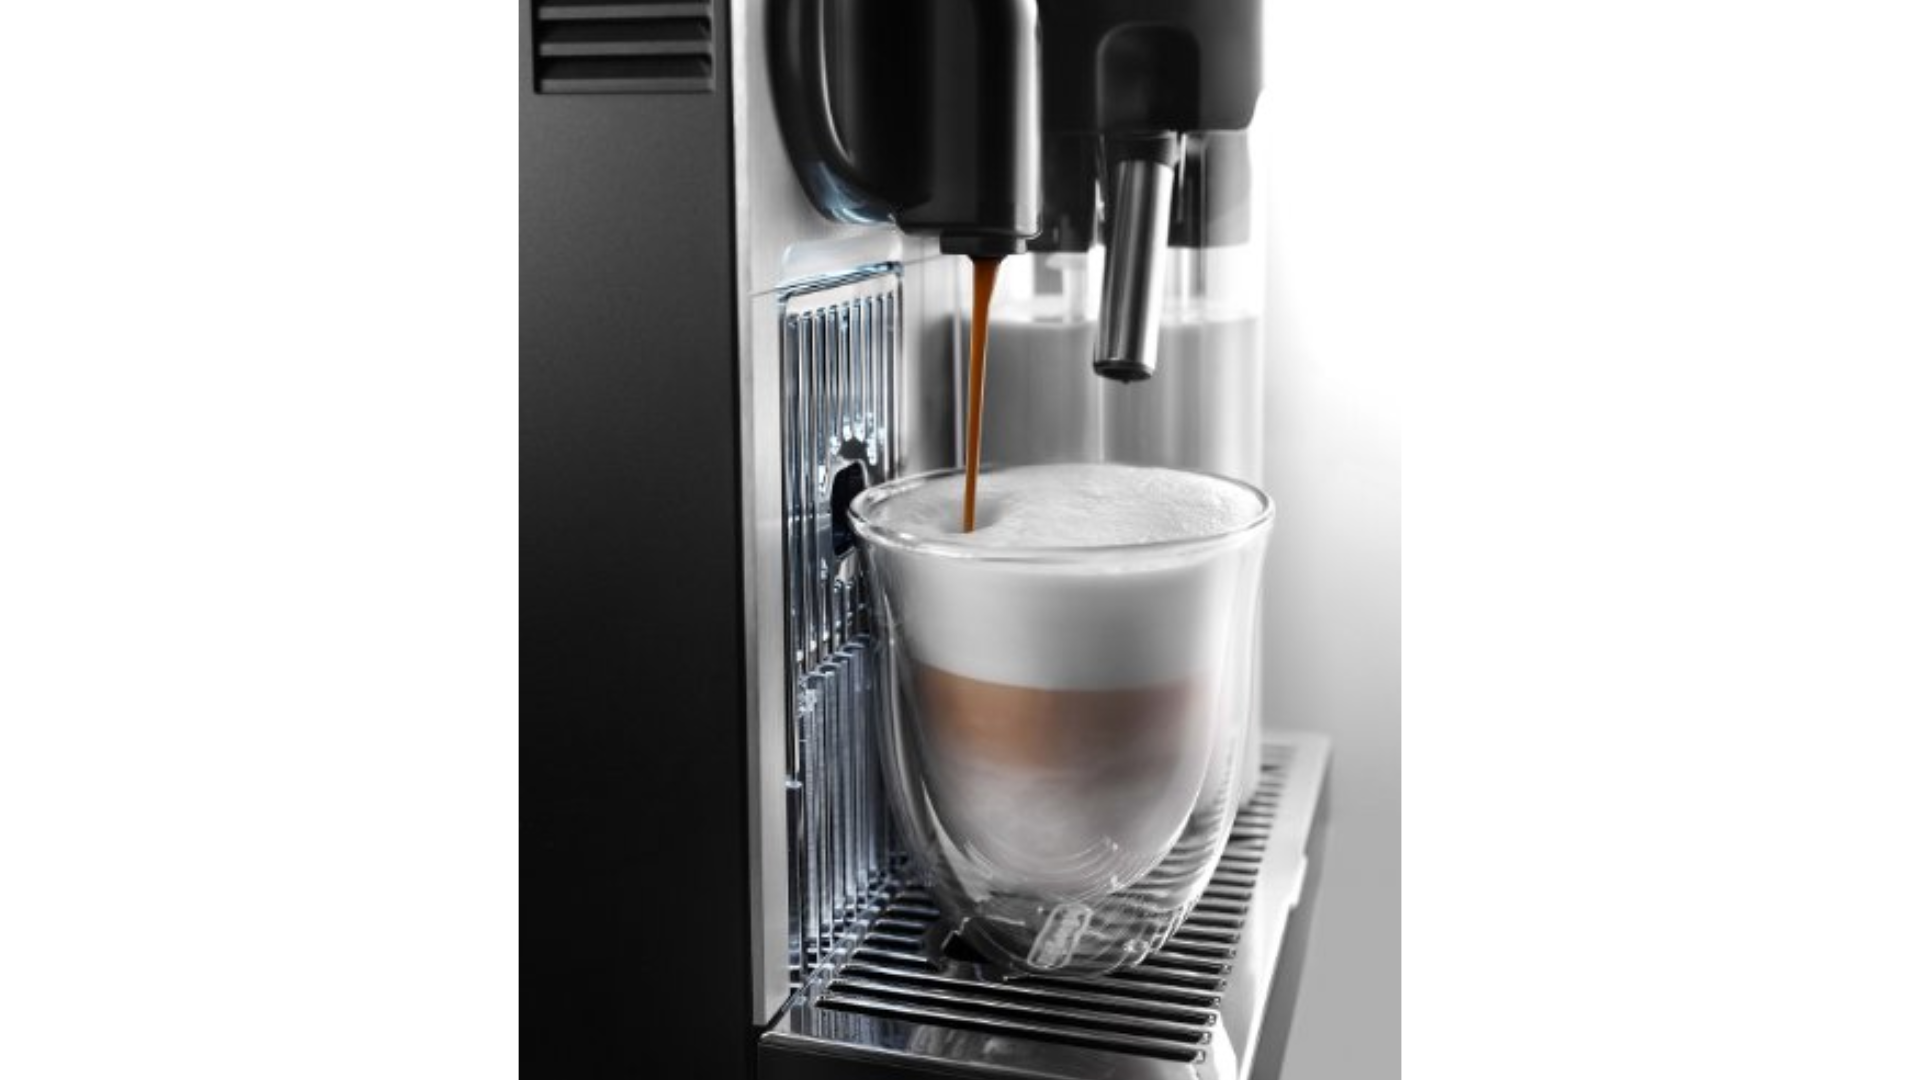 Nespresso Lattissima Pro Original Espresso Machine with Milk Frother by De’Longhi, 10.8″ L x 7.6″ W x 13″ H, Silver